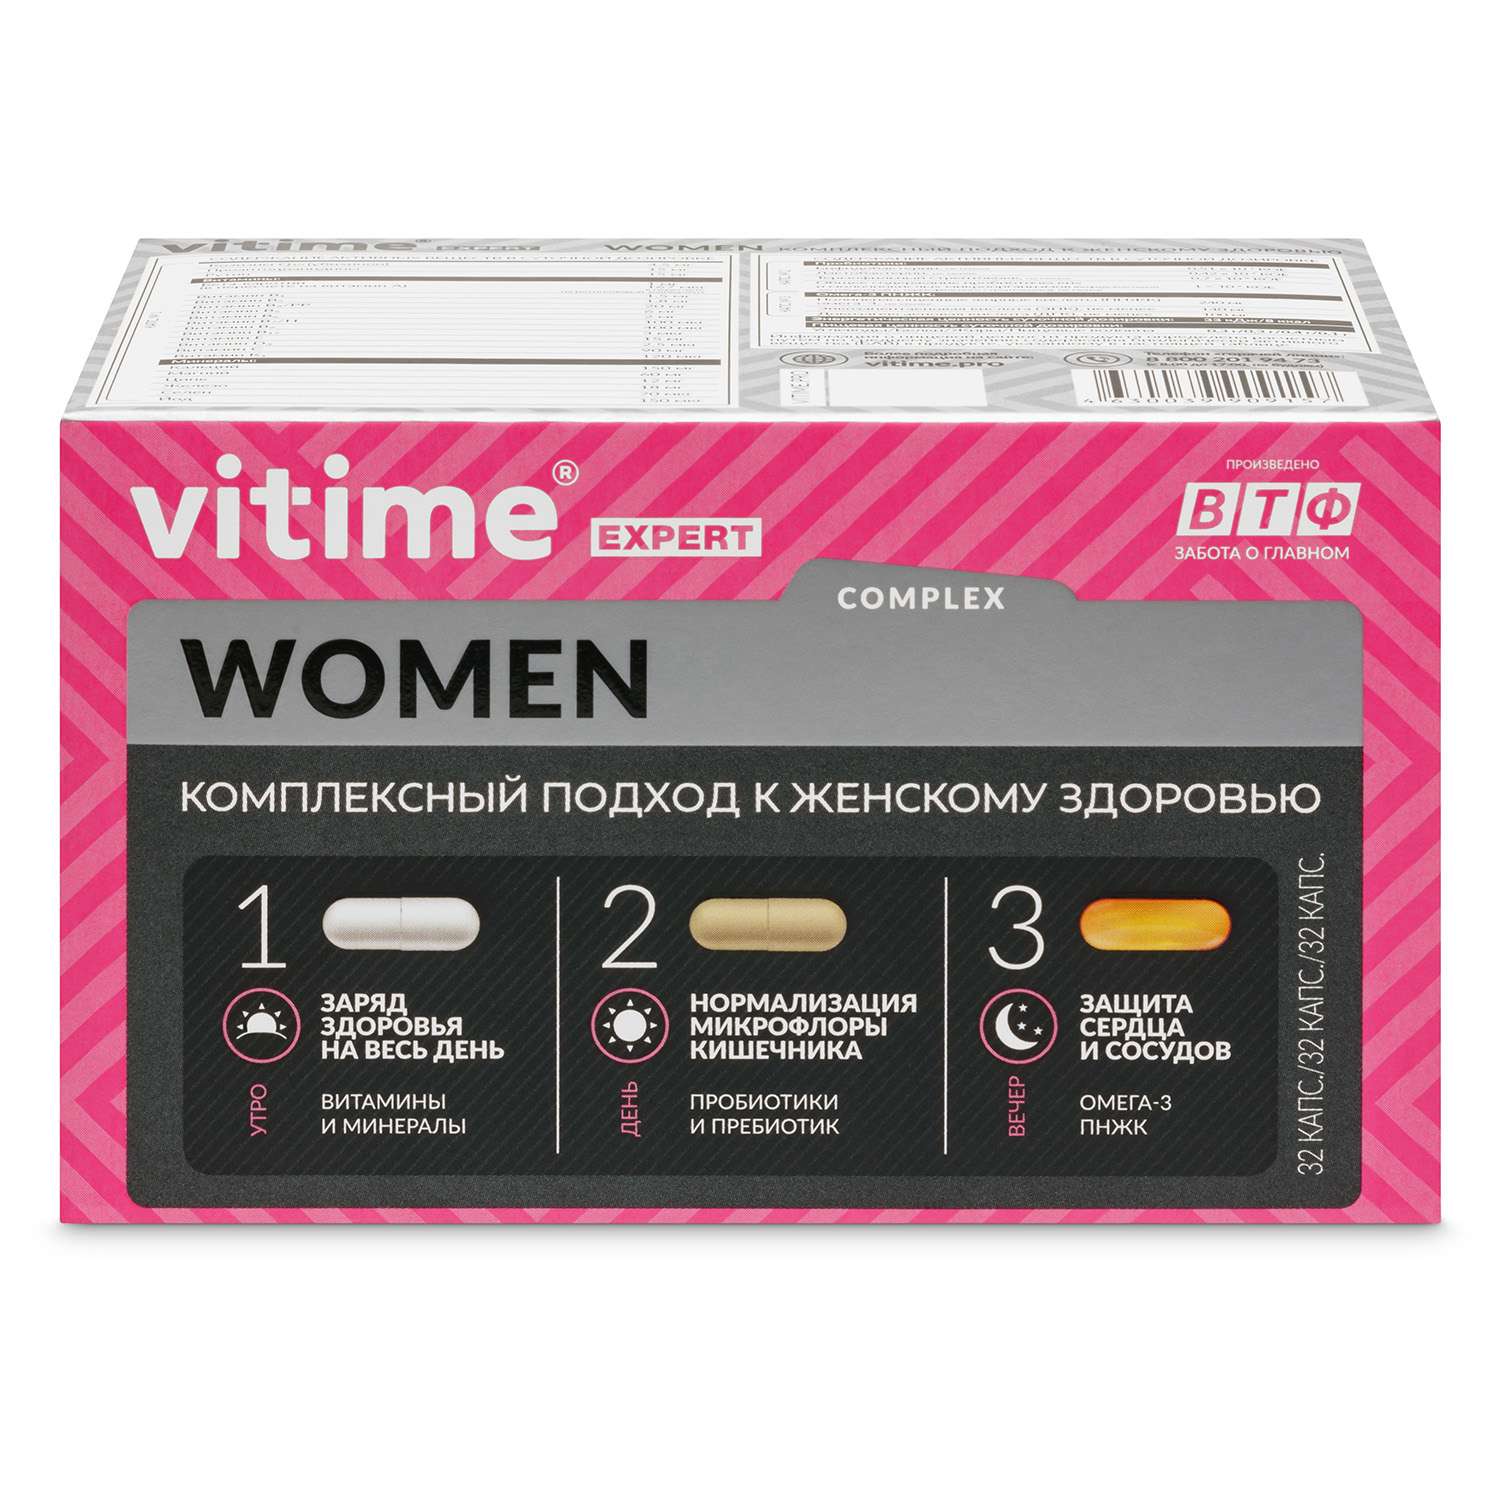 Витаминно-минеральный комплекс Vitime Expert Women для женщин 96 капсул - фото 1